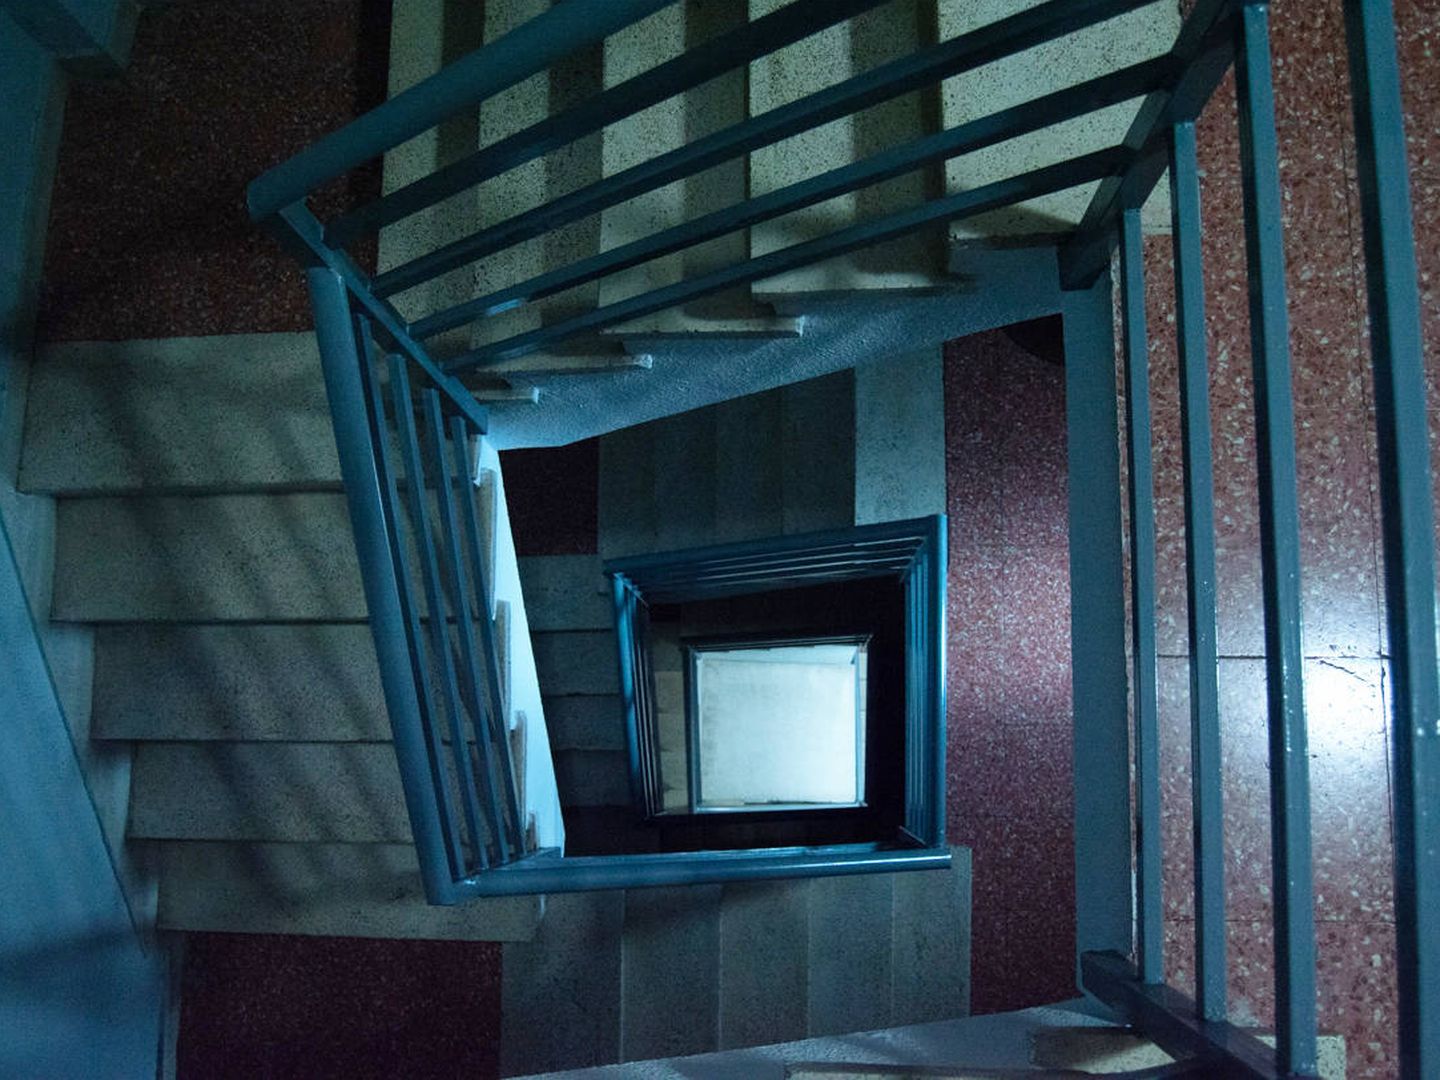 Escaleras del edificio en el que vive Nuria. (A. Rincón)